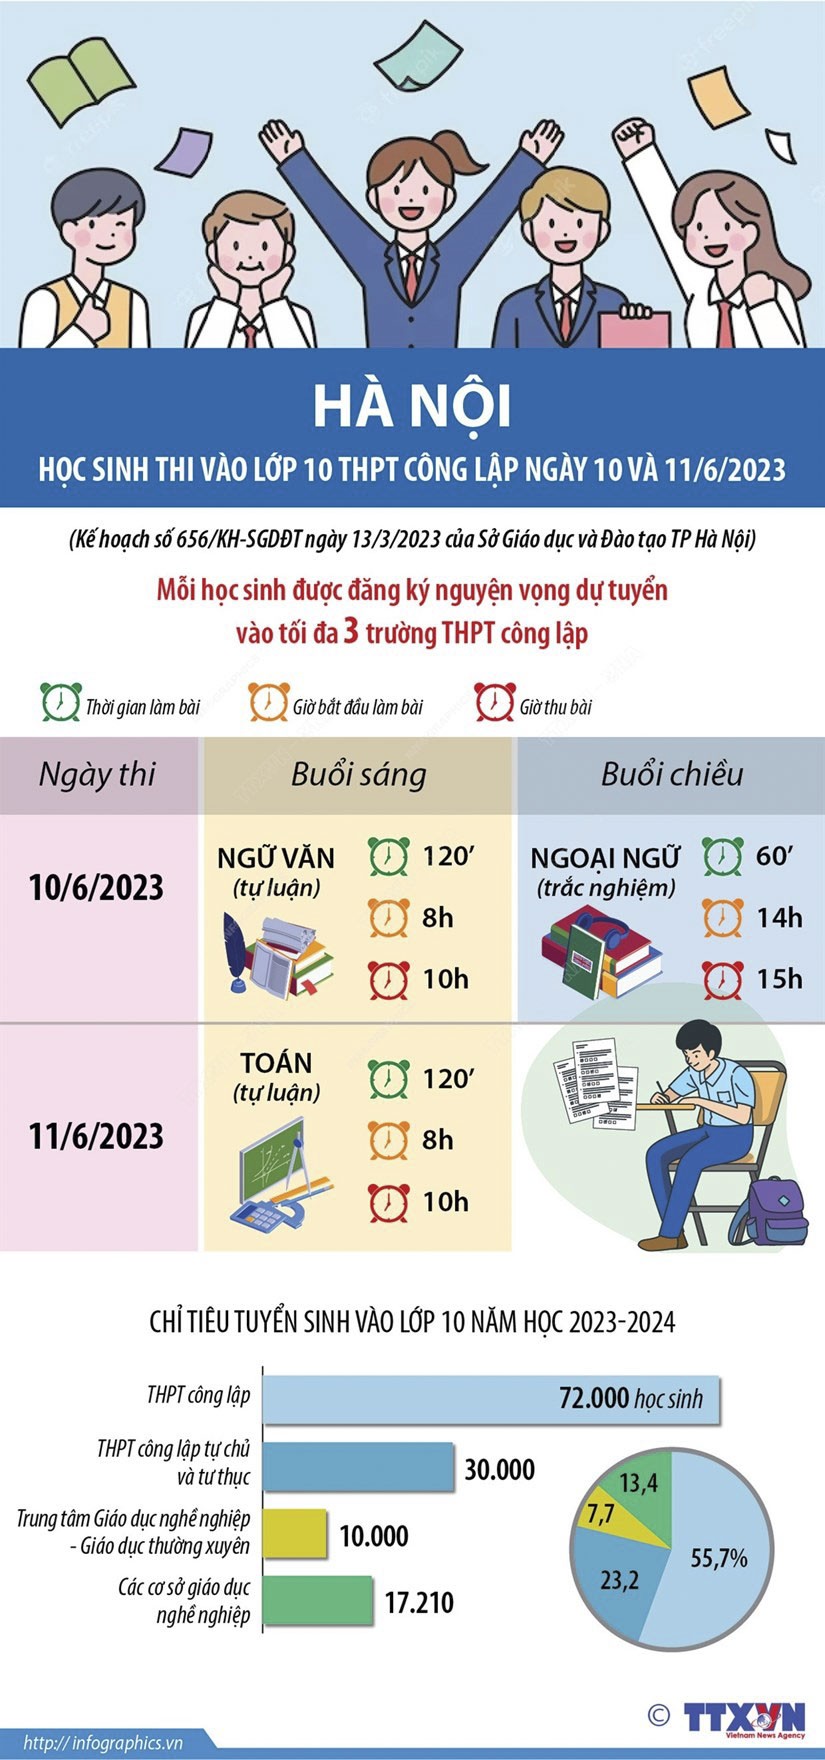 Công bố lịch thi vào lớp 10 THPT công lập ở Hà Nội